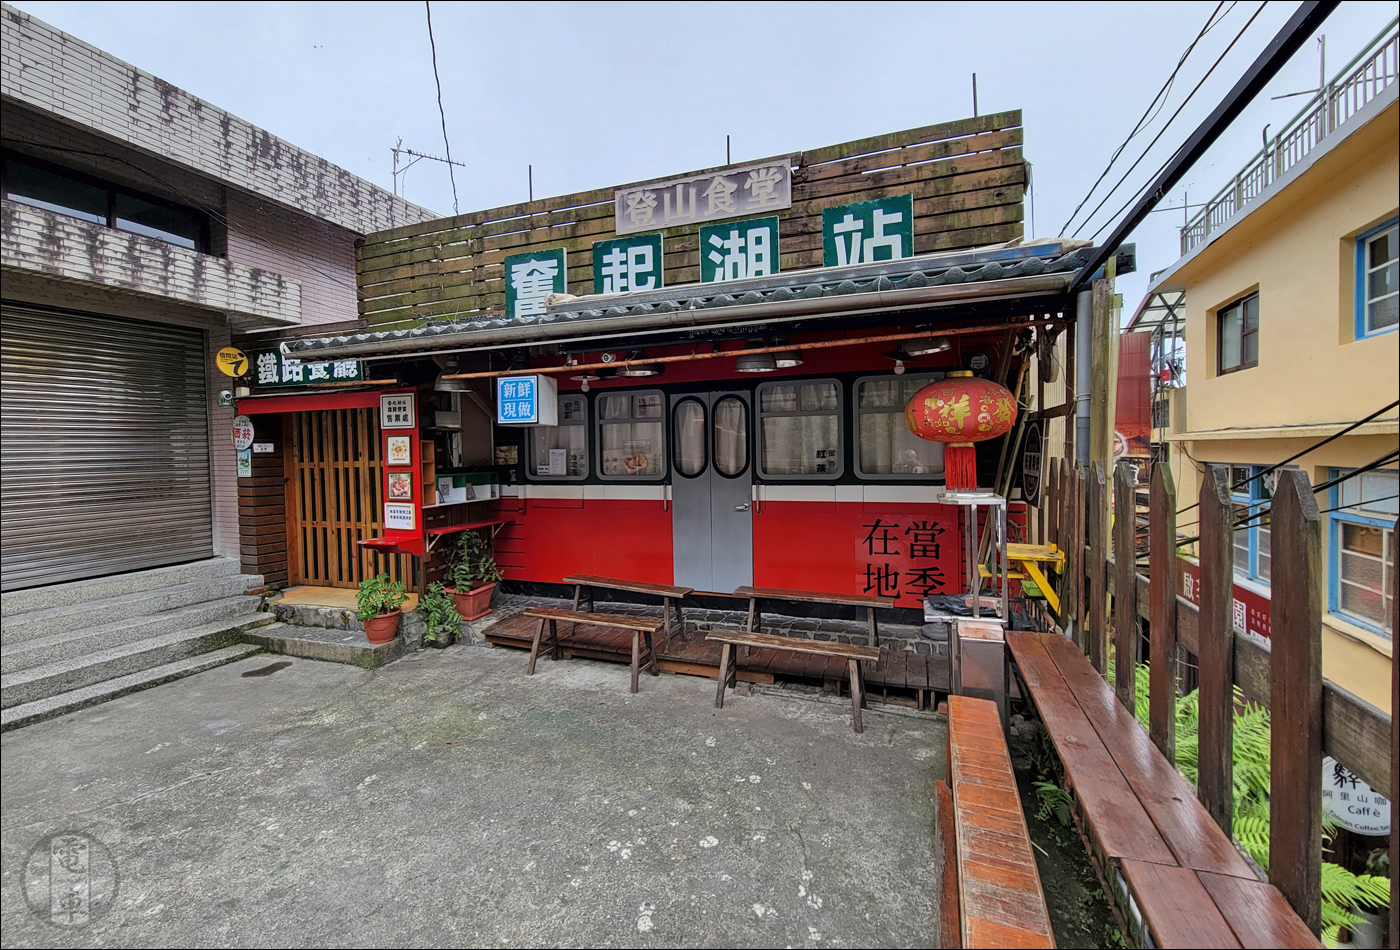 A Fenqihu állomásnál kialakított étterem, melynek specialitása – talán nem meglepő módon – szintén az előbb látott bento.